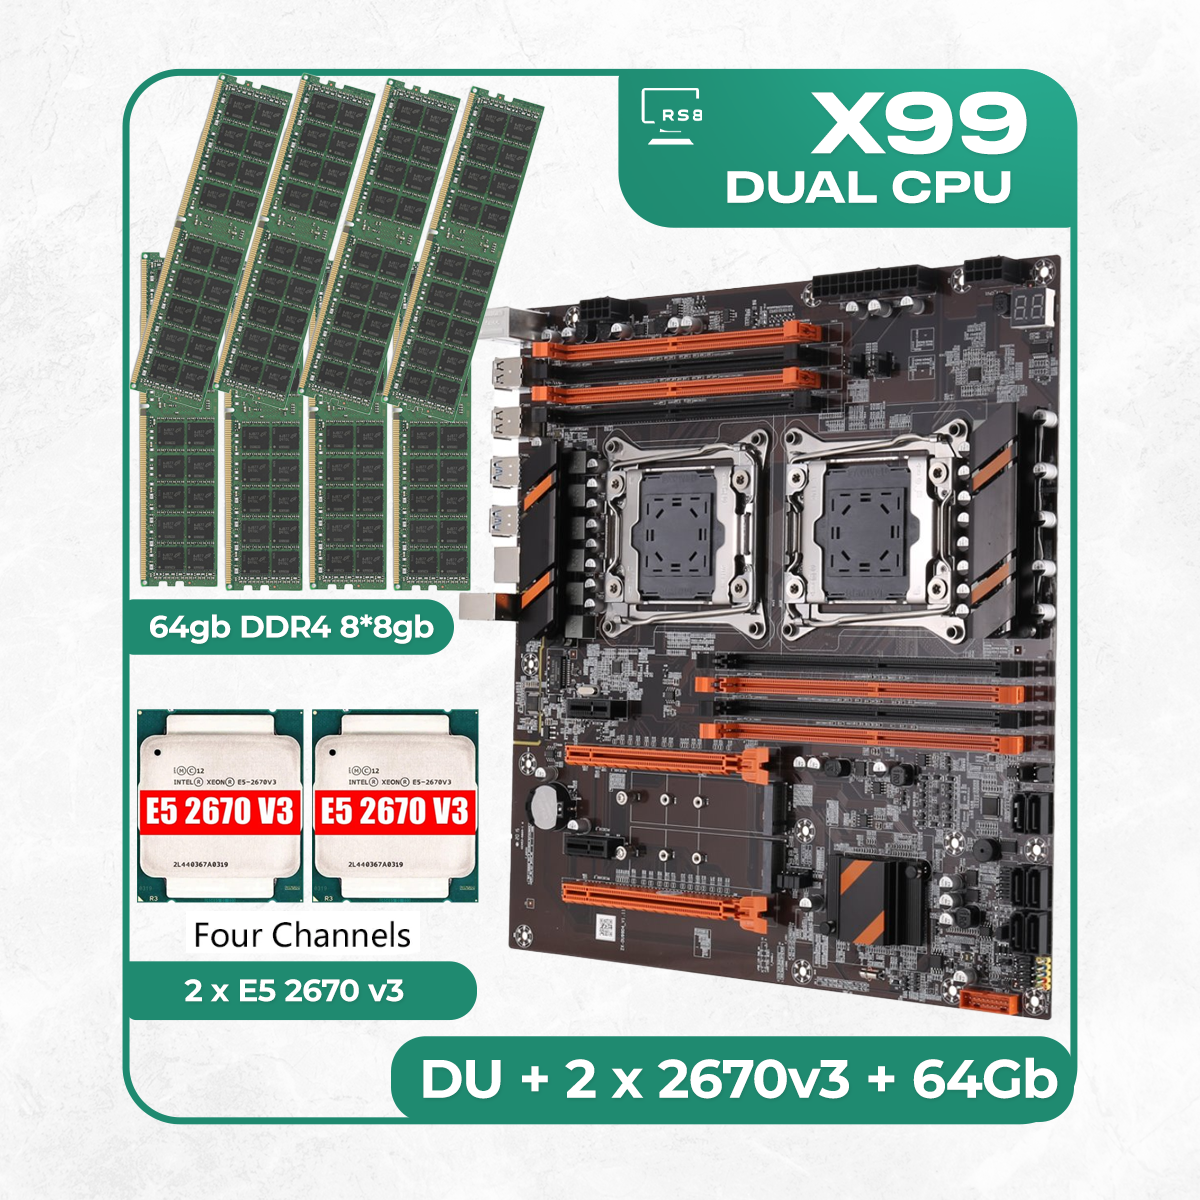 Комплект материнской платы X99: ZX-DU99D4 + 2 x Xeon E5 2670v3 + DDR4 64Гб 8х8Гб